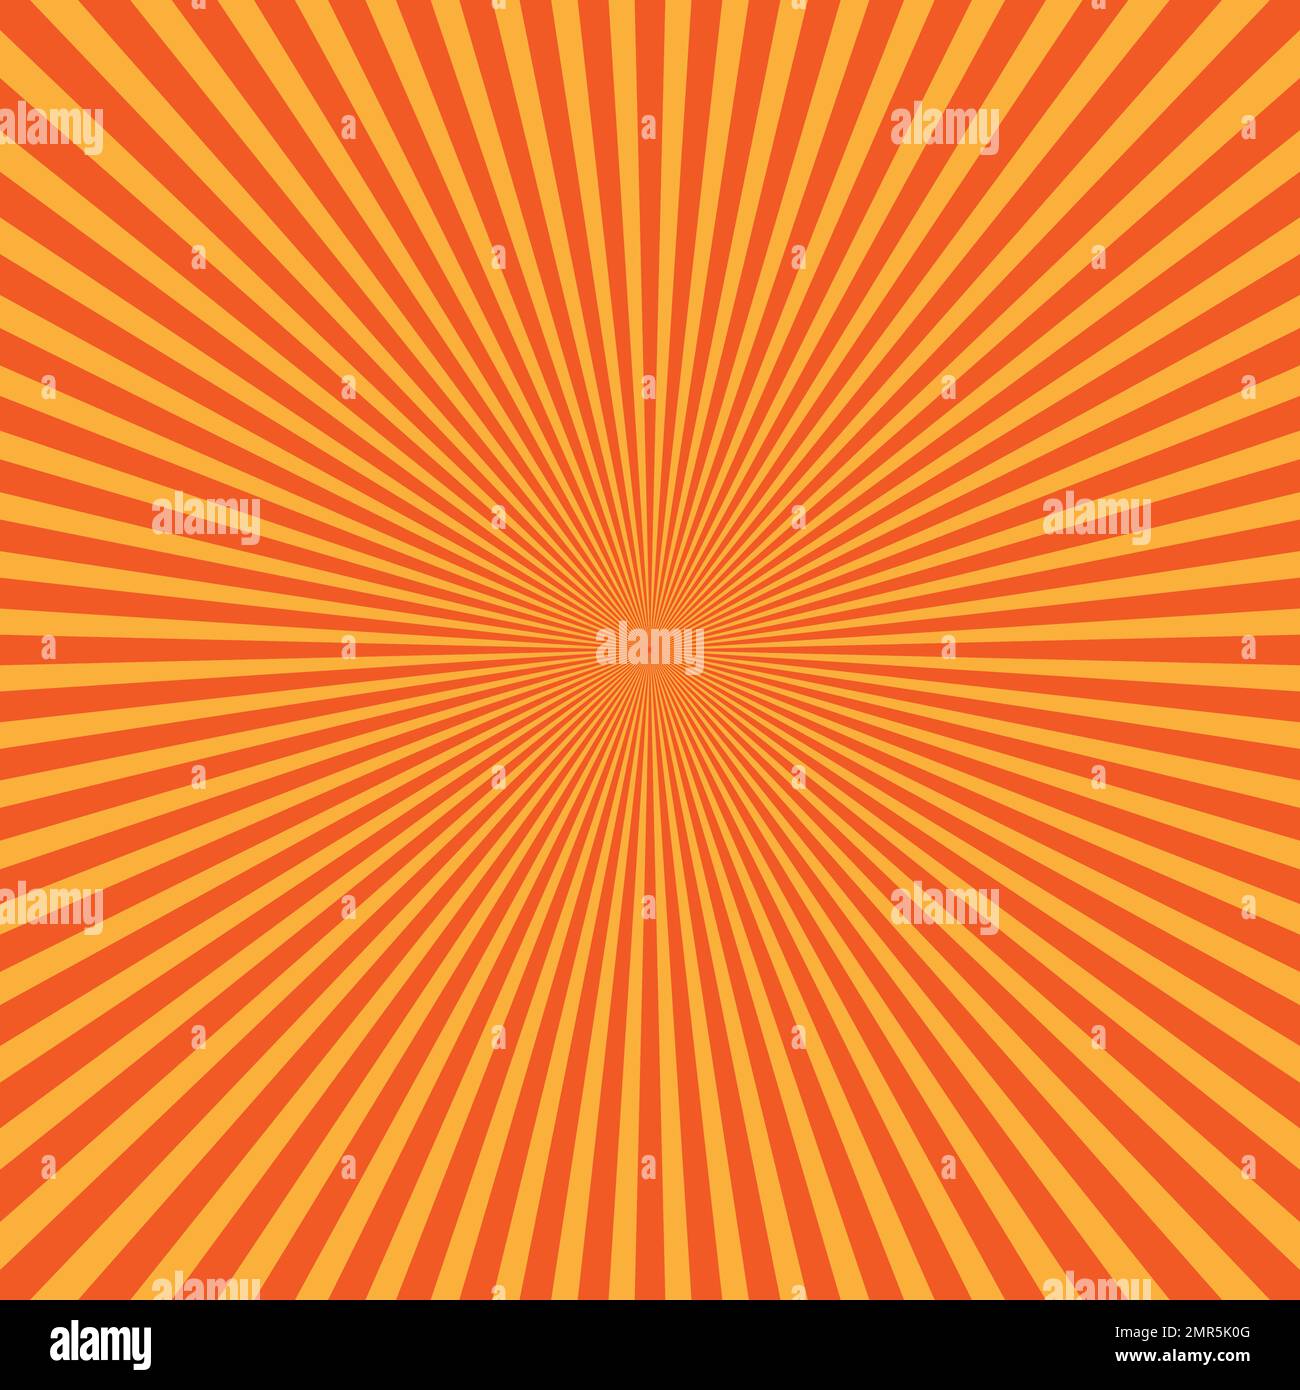 Raggi di luce giallo-arancio in disposizione radiale. Tema raggi di sole. Schema di sfondo astratto. Illustrazione vettoriale Illustrazione Vettoriale